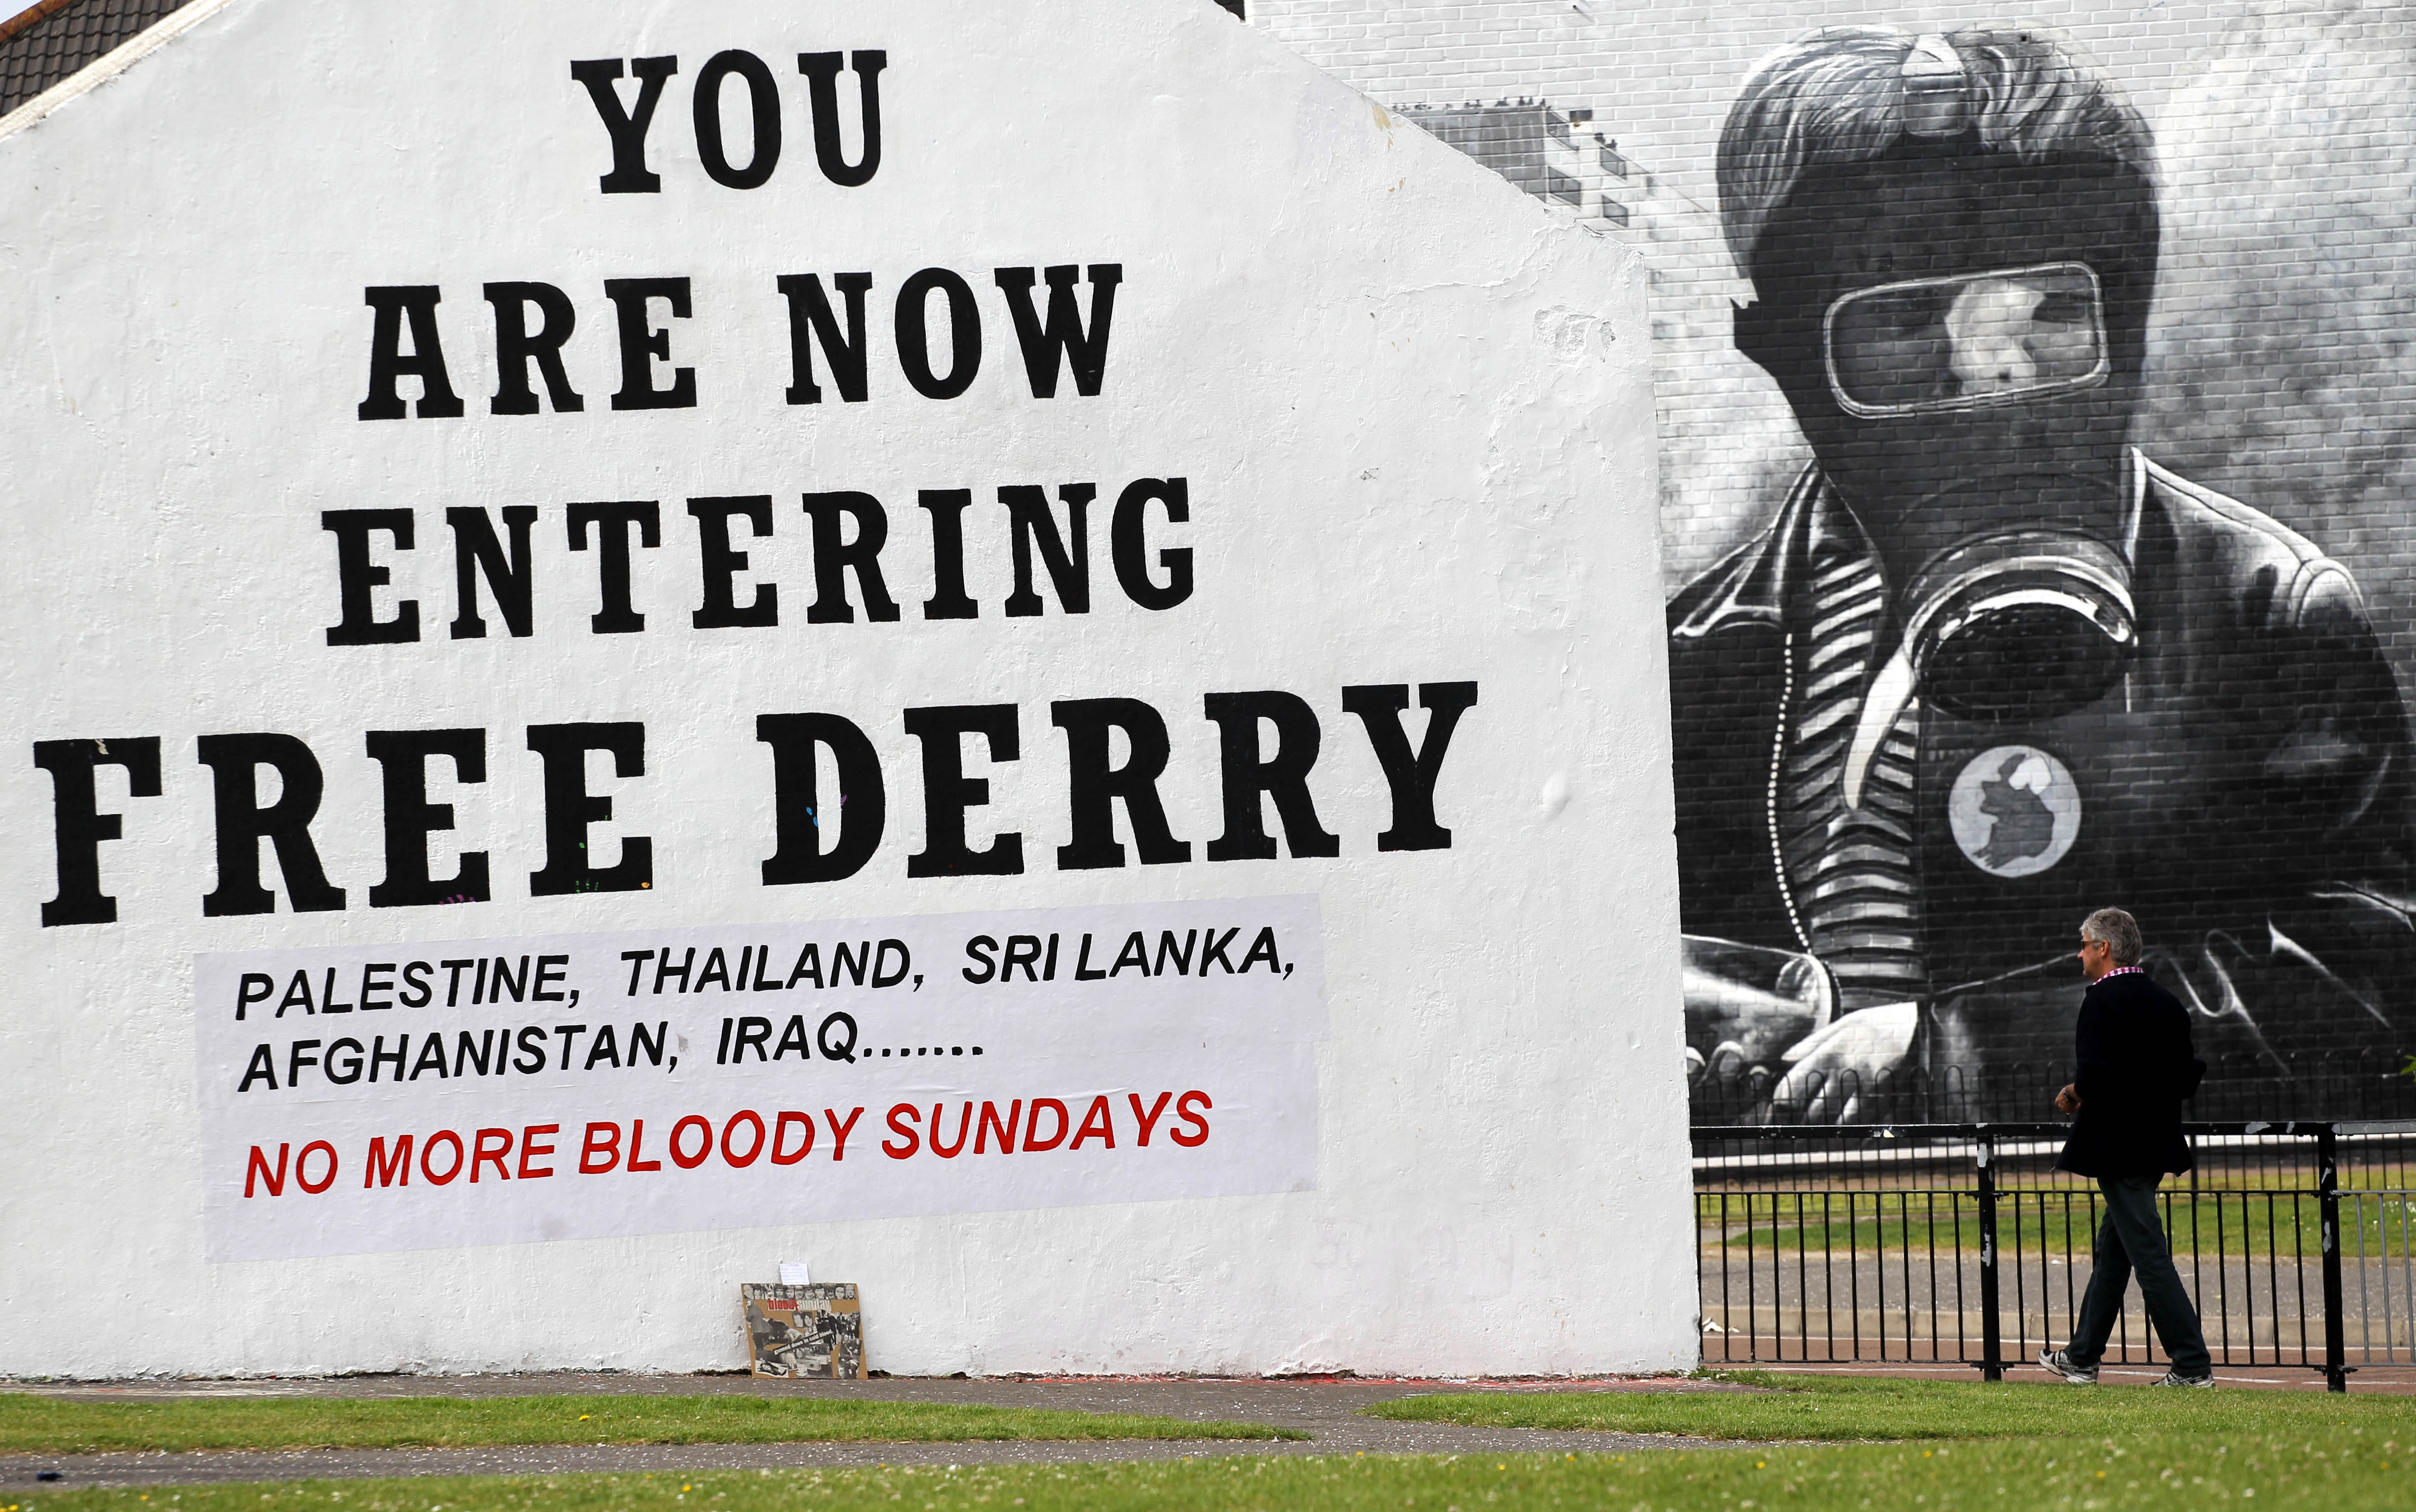 Attentatet skedde i Londonderry, eller Derry som republikanerna kallar staden – scen för den blodiga söndagen för 38 år sen.